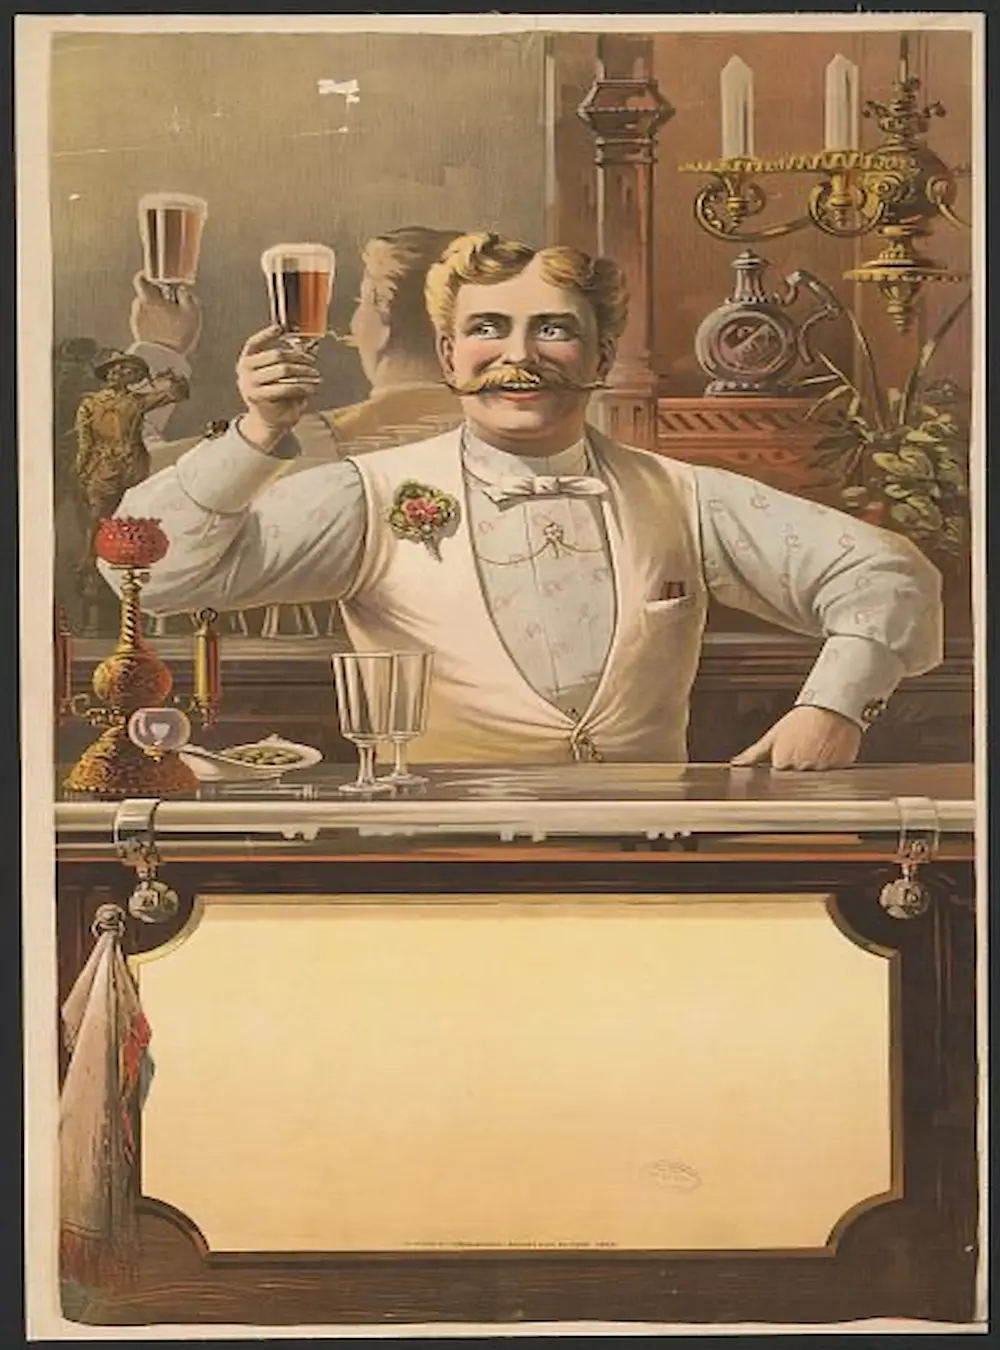 Vintage poster of a bartender making cocktails for guests